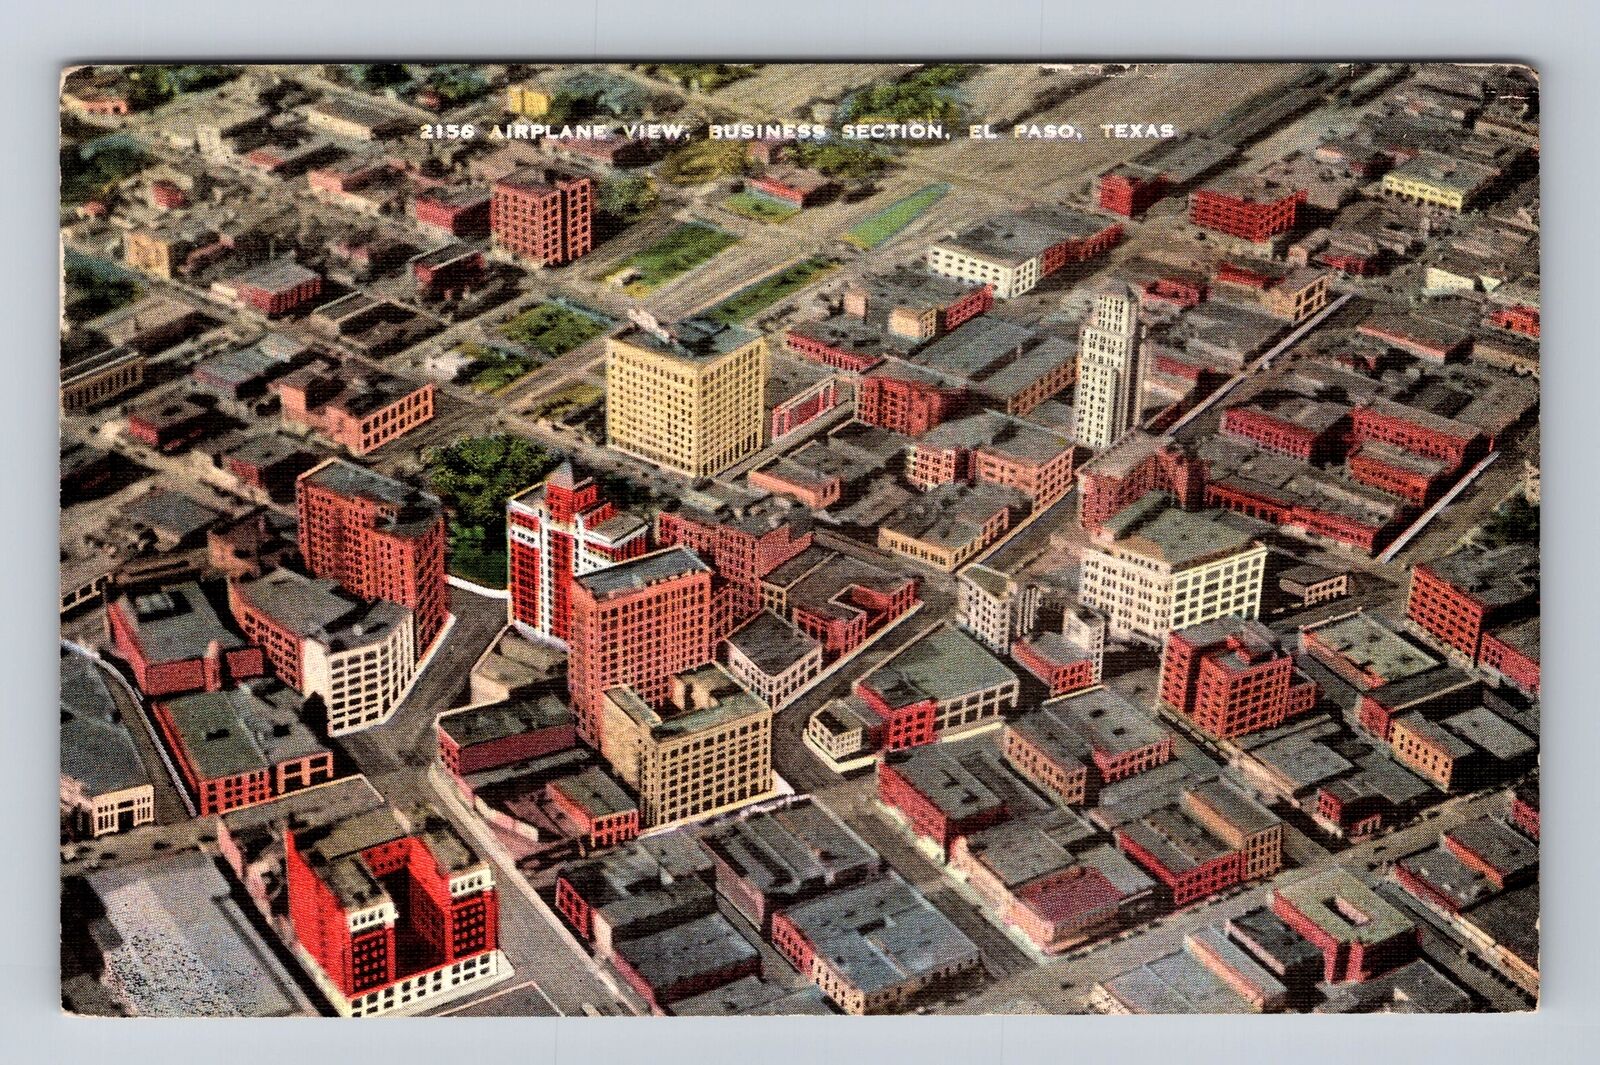 El Paso TX-Texas, Aerial View El Paso Business Section, Vintage c1943 Postcard